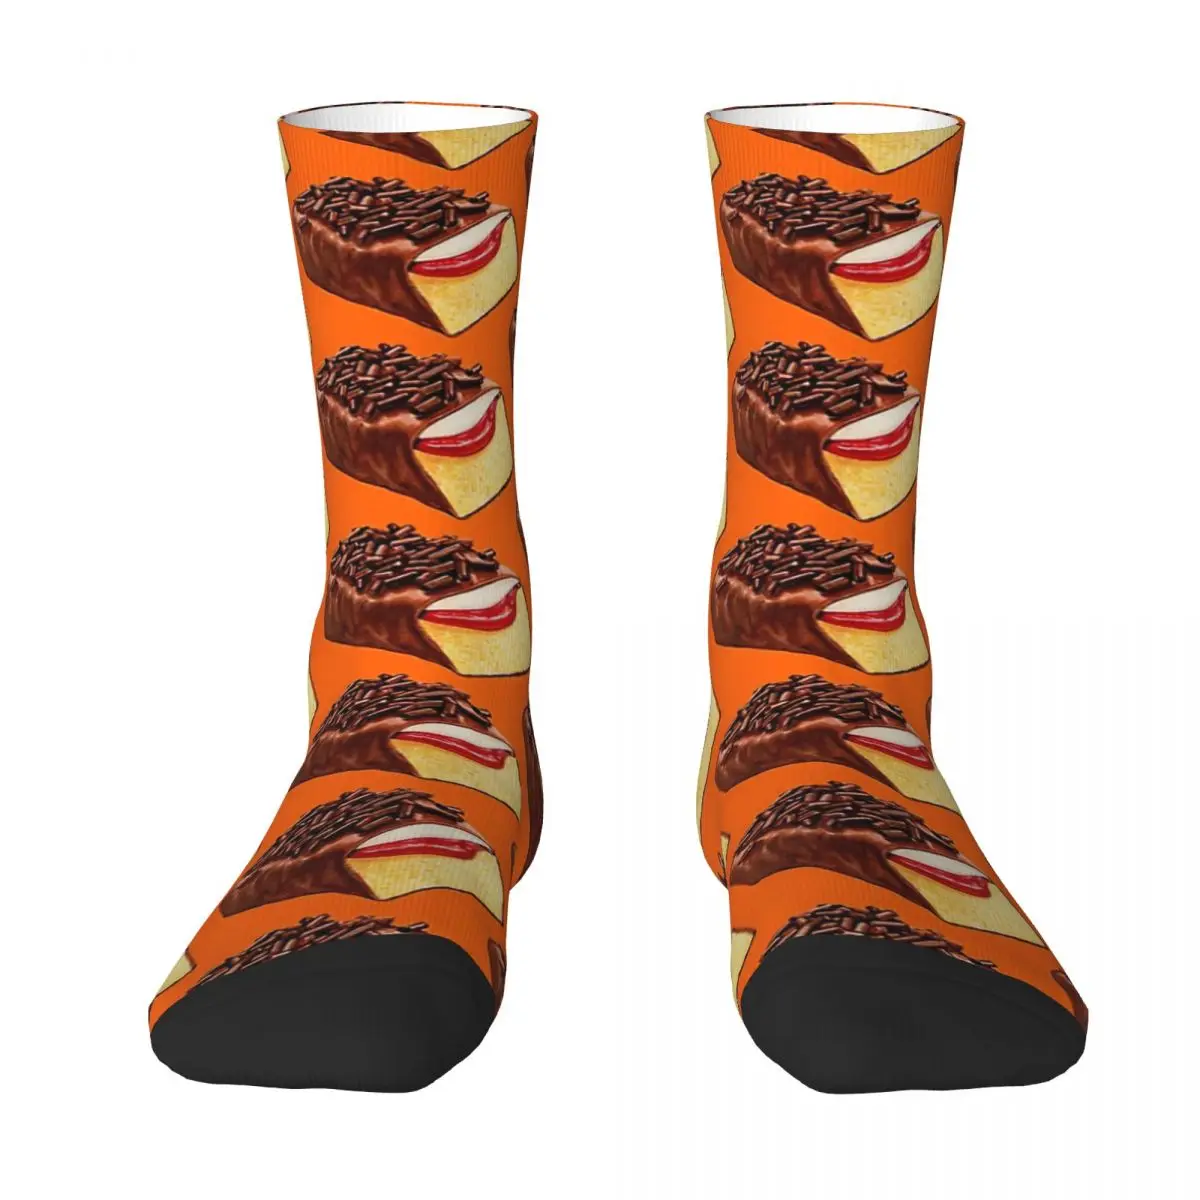 Gansito - Orange Adult Socks,Unisex socks,men Socks women Socks